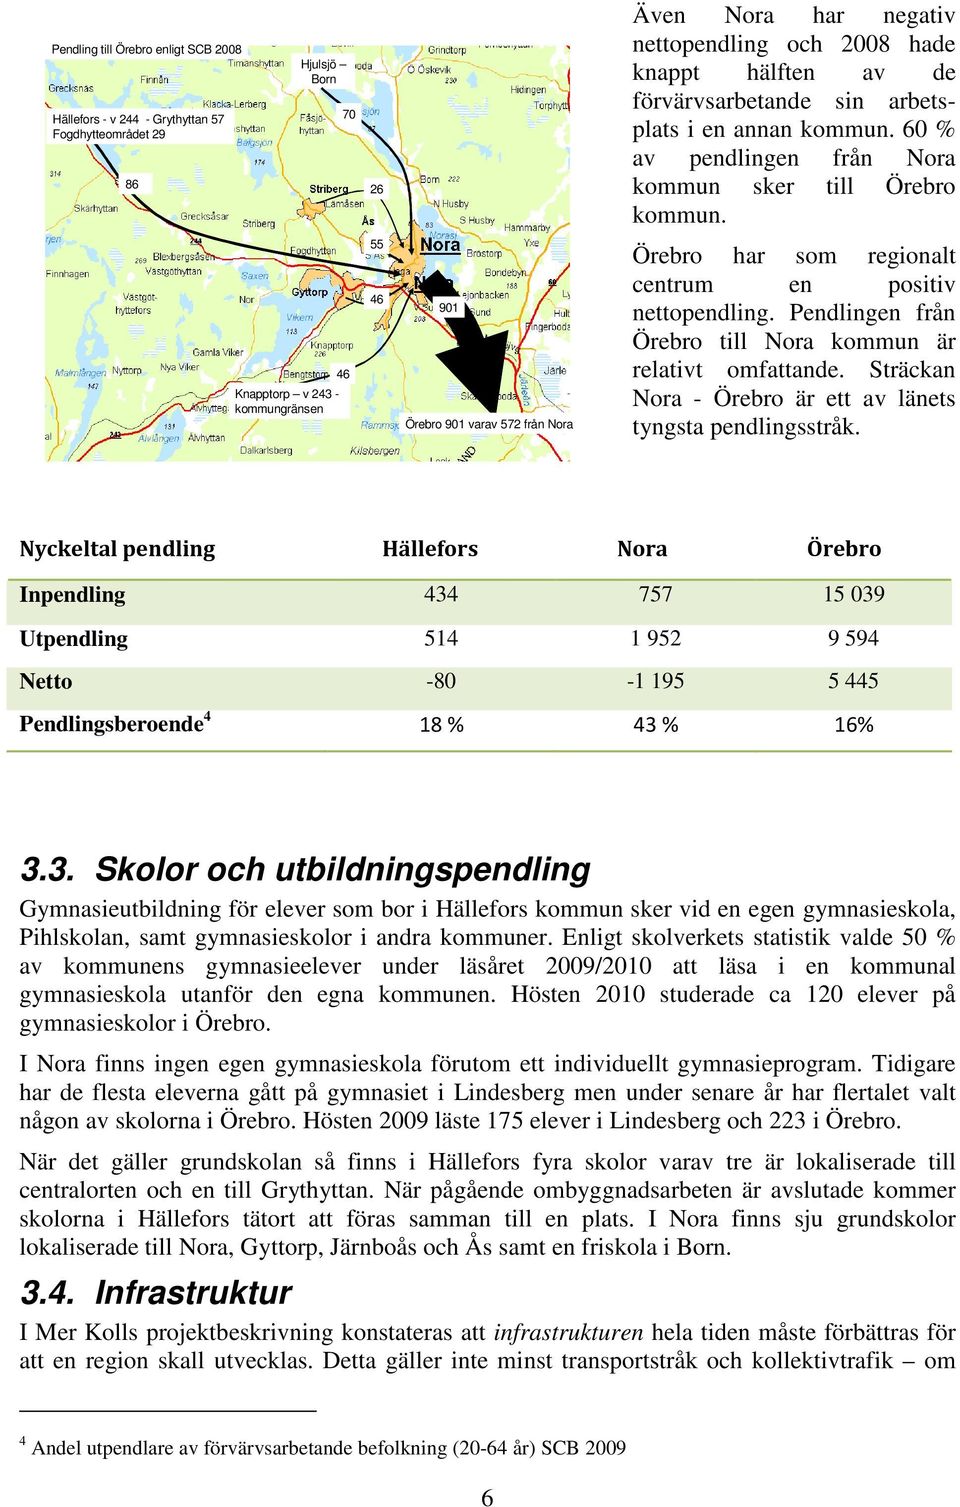 Knapptorp v 243 - kommungränsen 46 55 46 901 Örebro 901 varav 572 från Nora Örebro har som regionalt centrum en positiv nettopendling. Pendlingen från Örebro till Nora kommun är relativt omfattande.